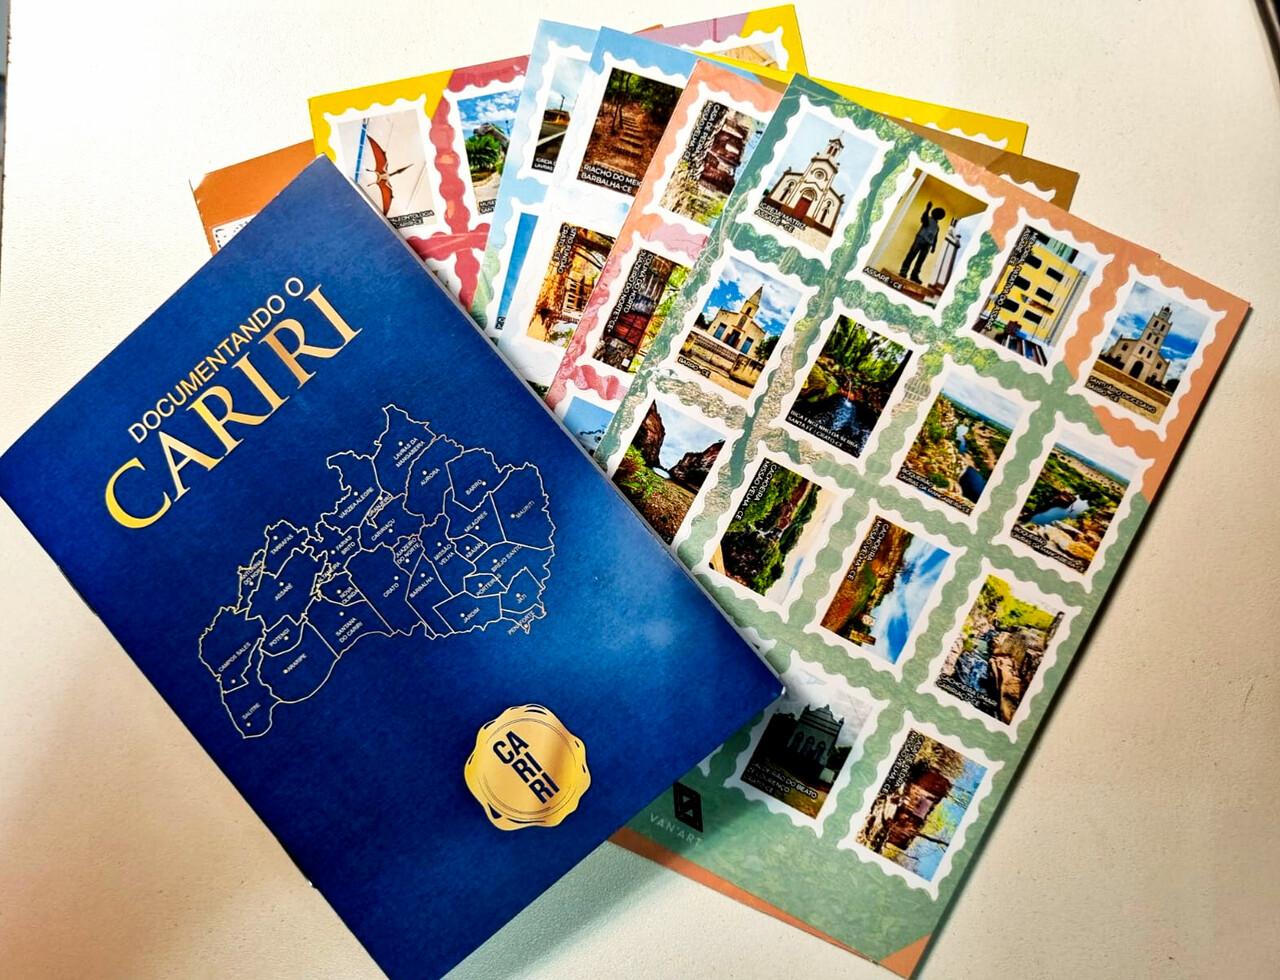 Passaporte conta com selos autocolantes e espaço para escrever memórias